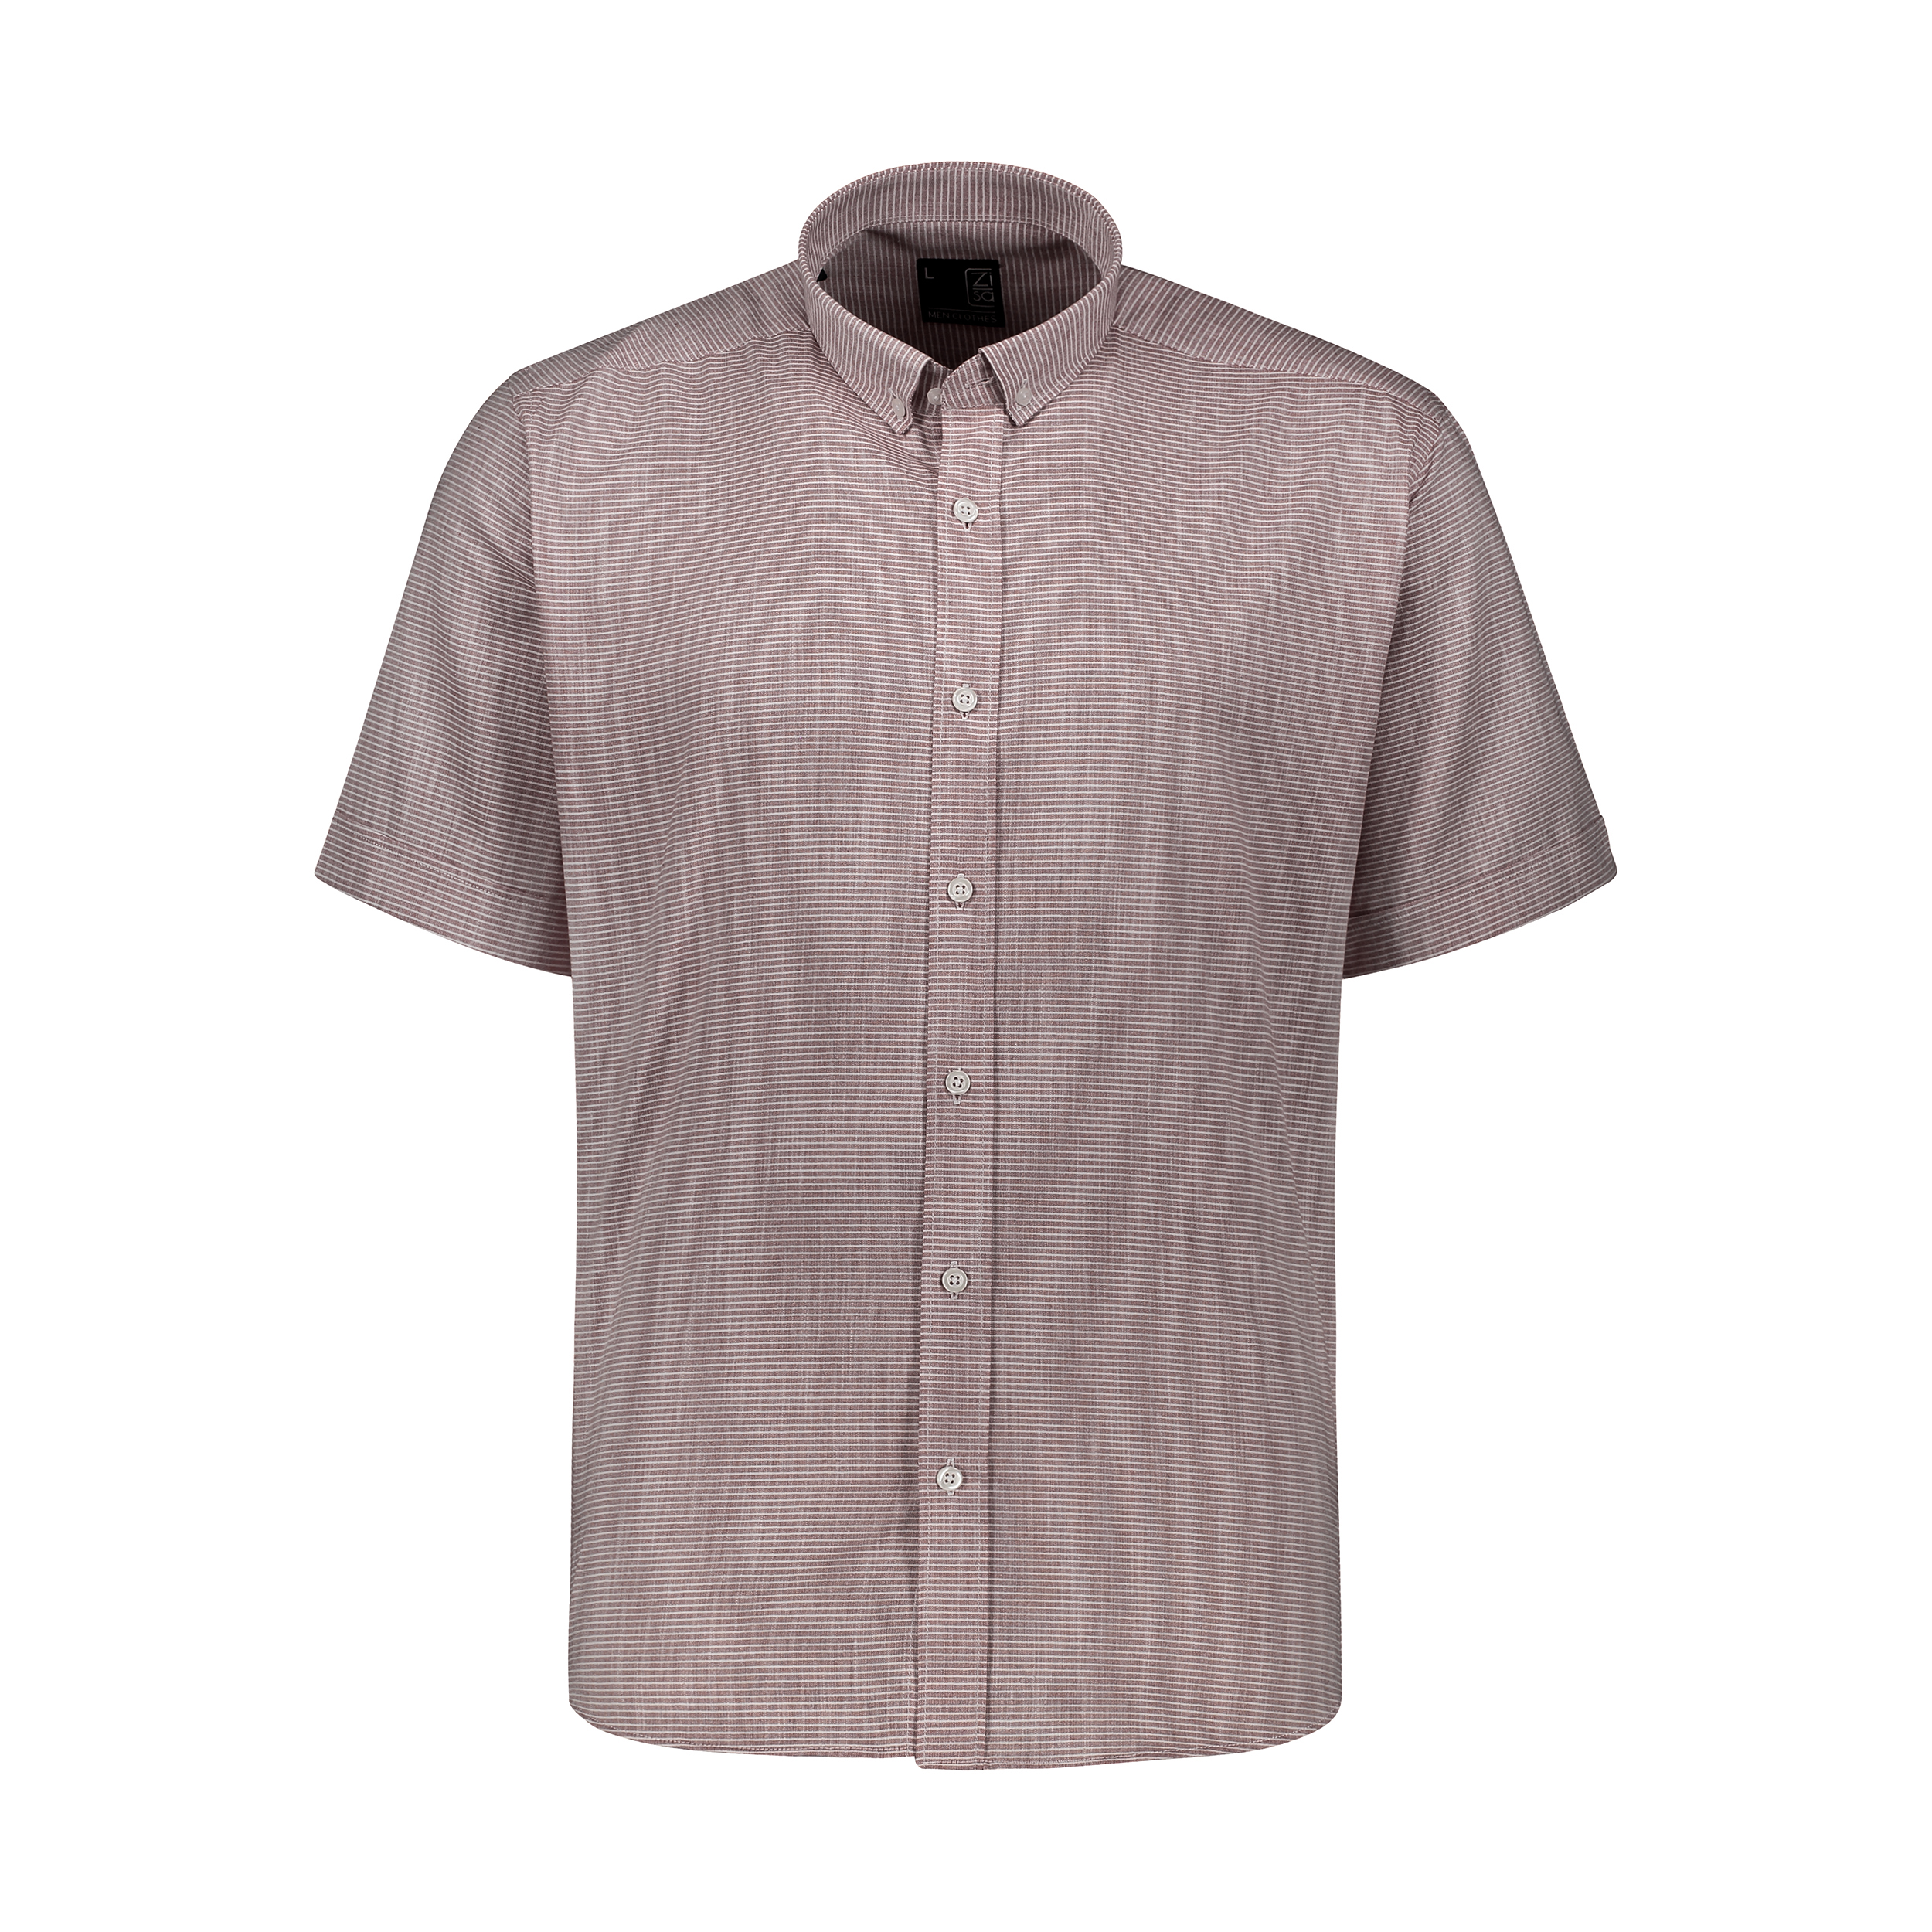 نکته خرید - قیمت روز پیراهن مردانه زی سا مدل 15314930170 خرید